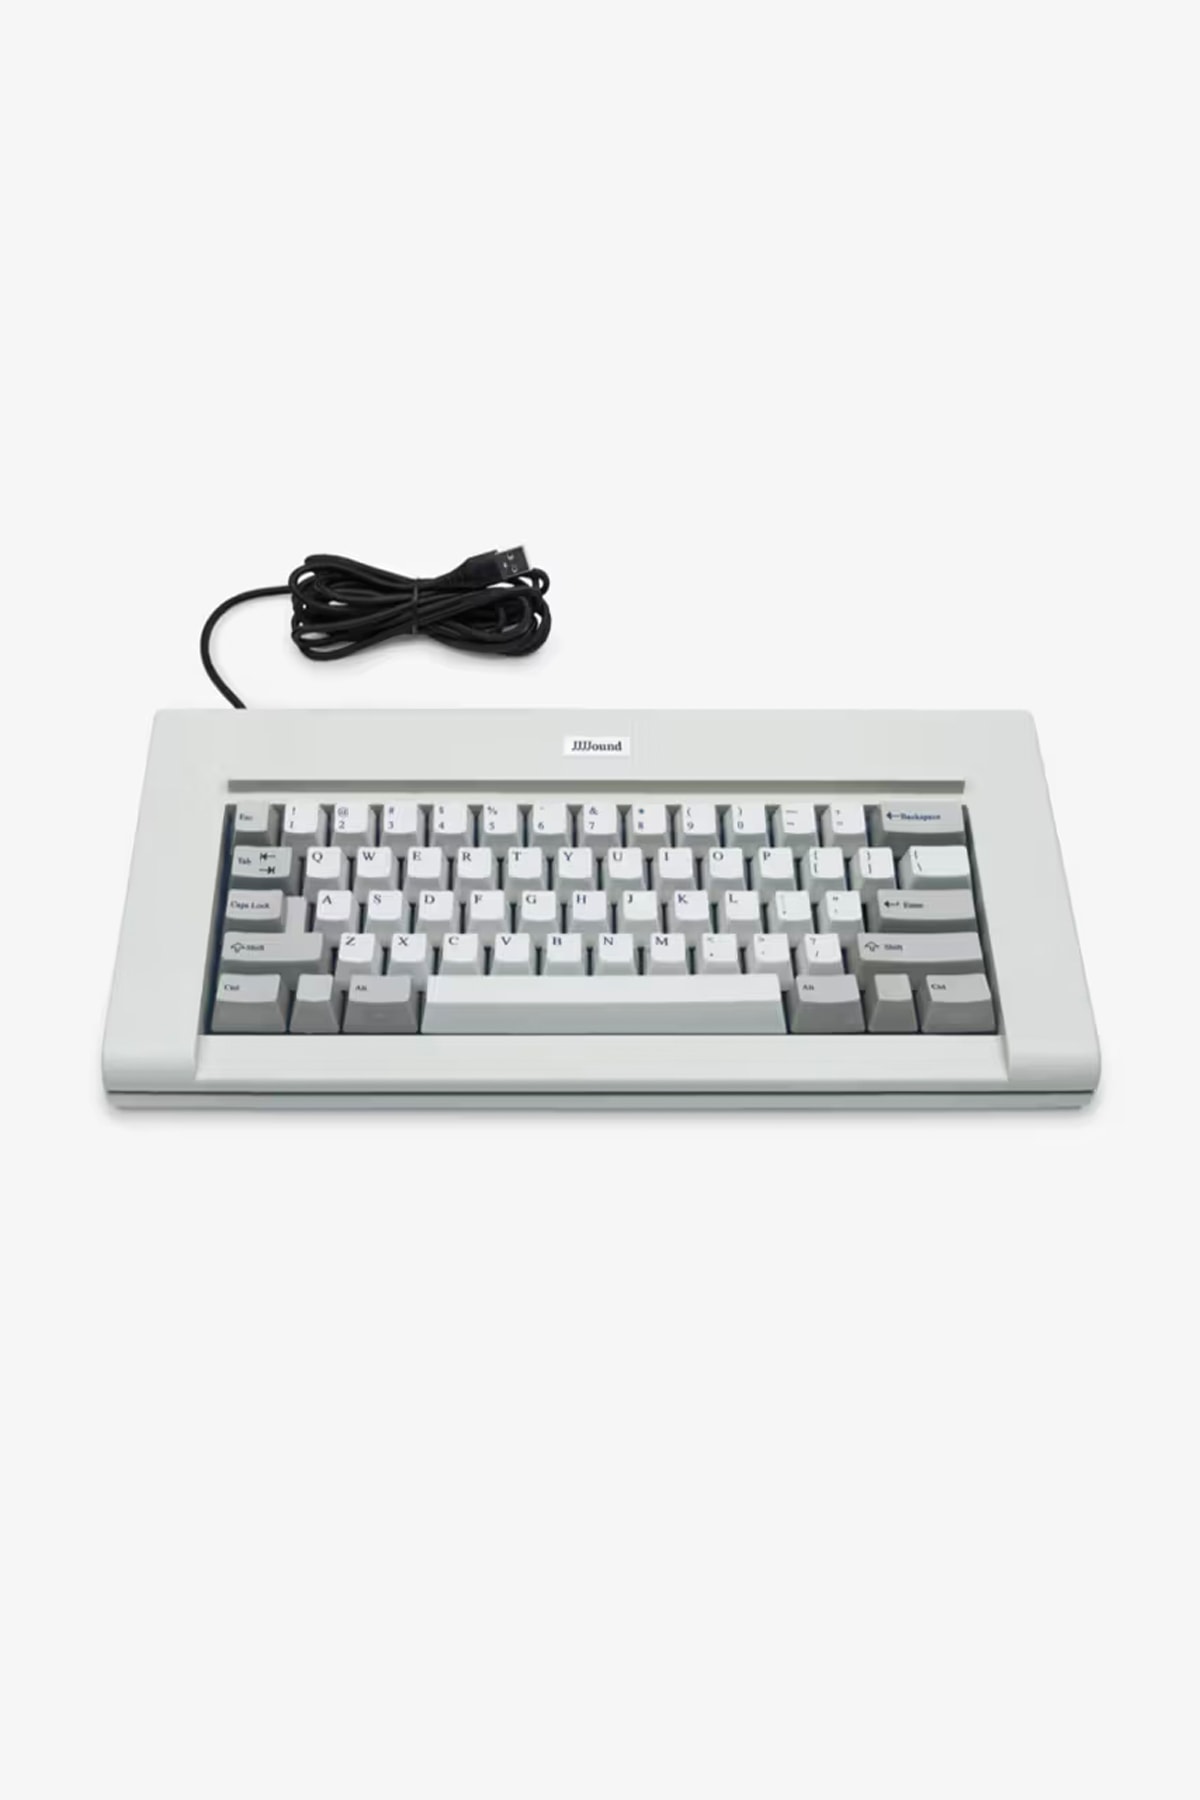 JJJJound 推出要價 $650 美元的復古電腦鍵盤